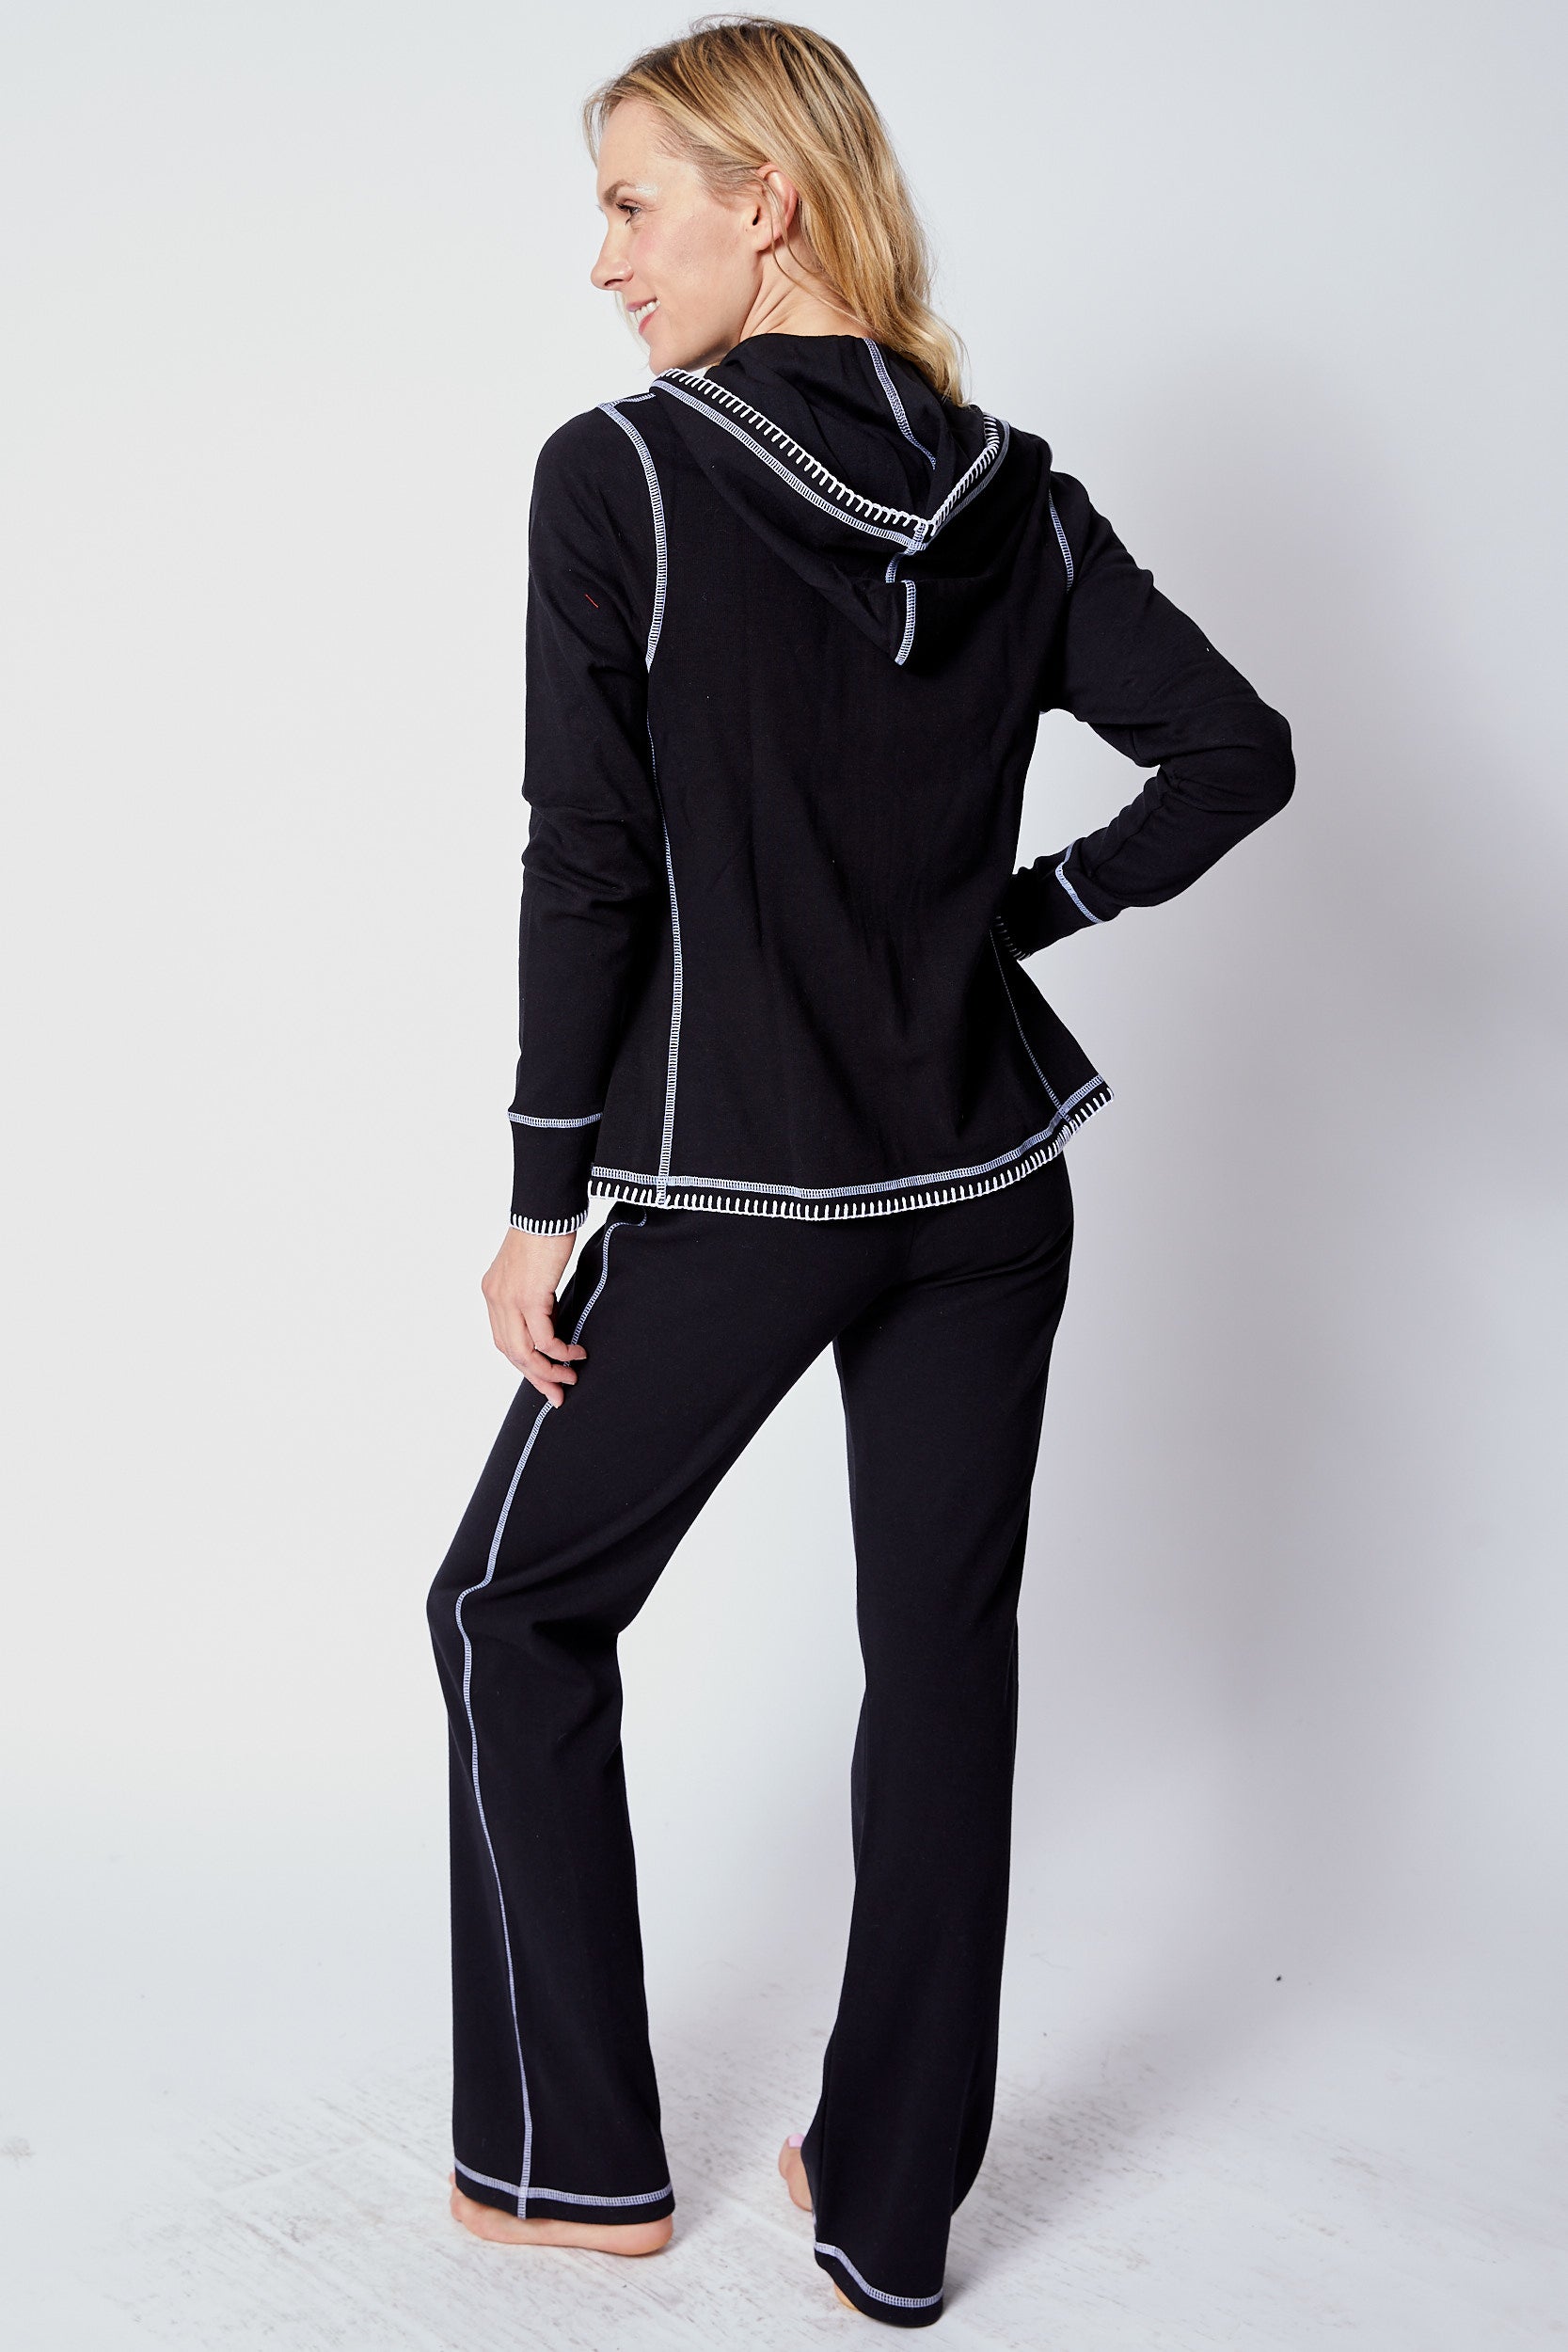 Black and White Sweats - Jacqueline B Clothing